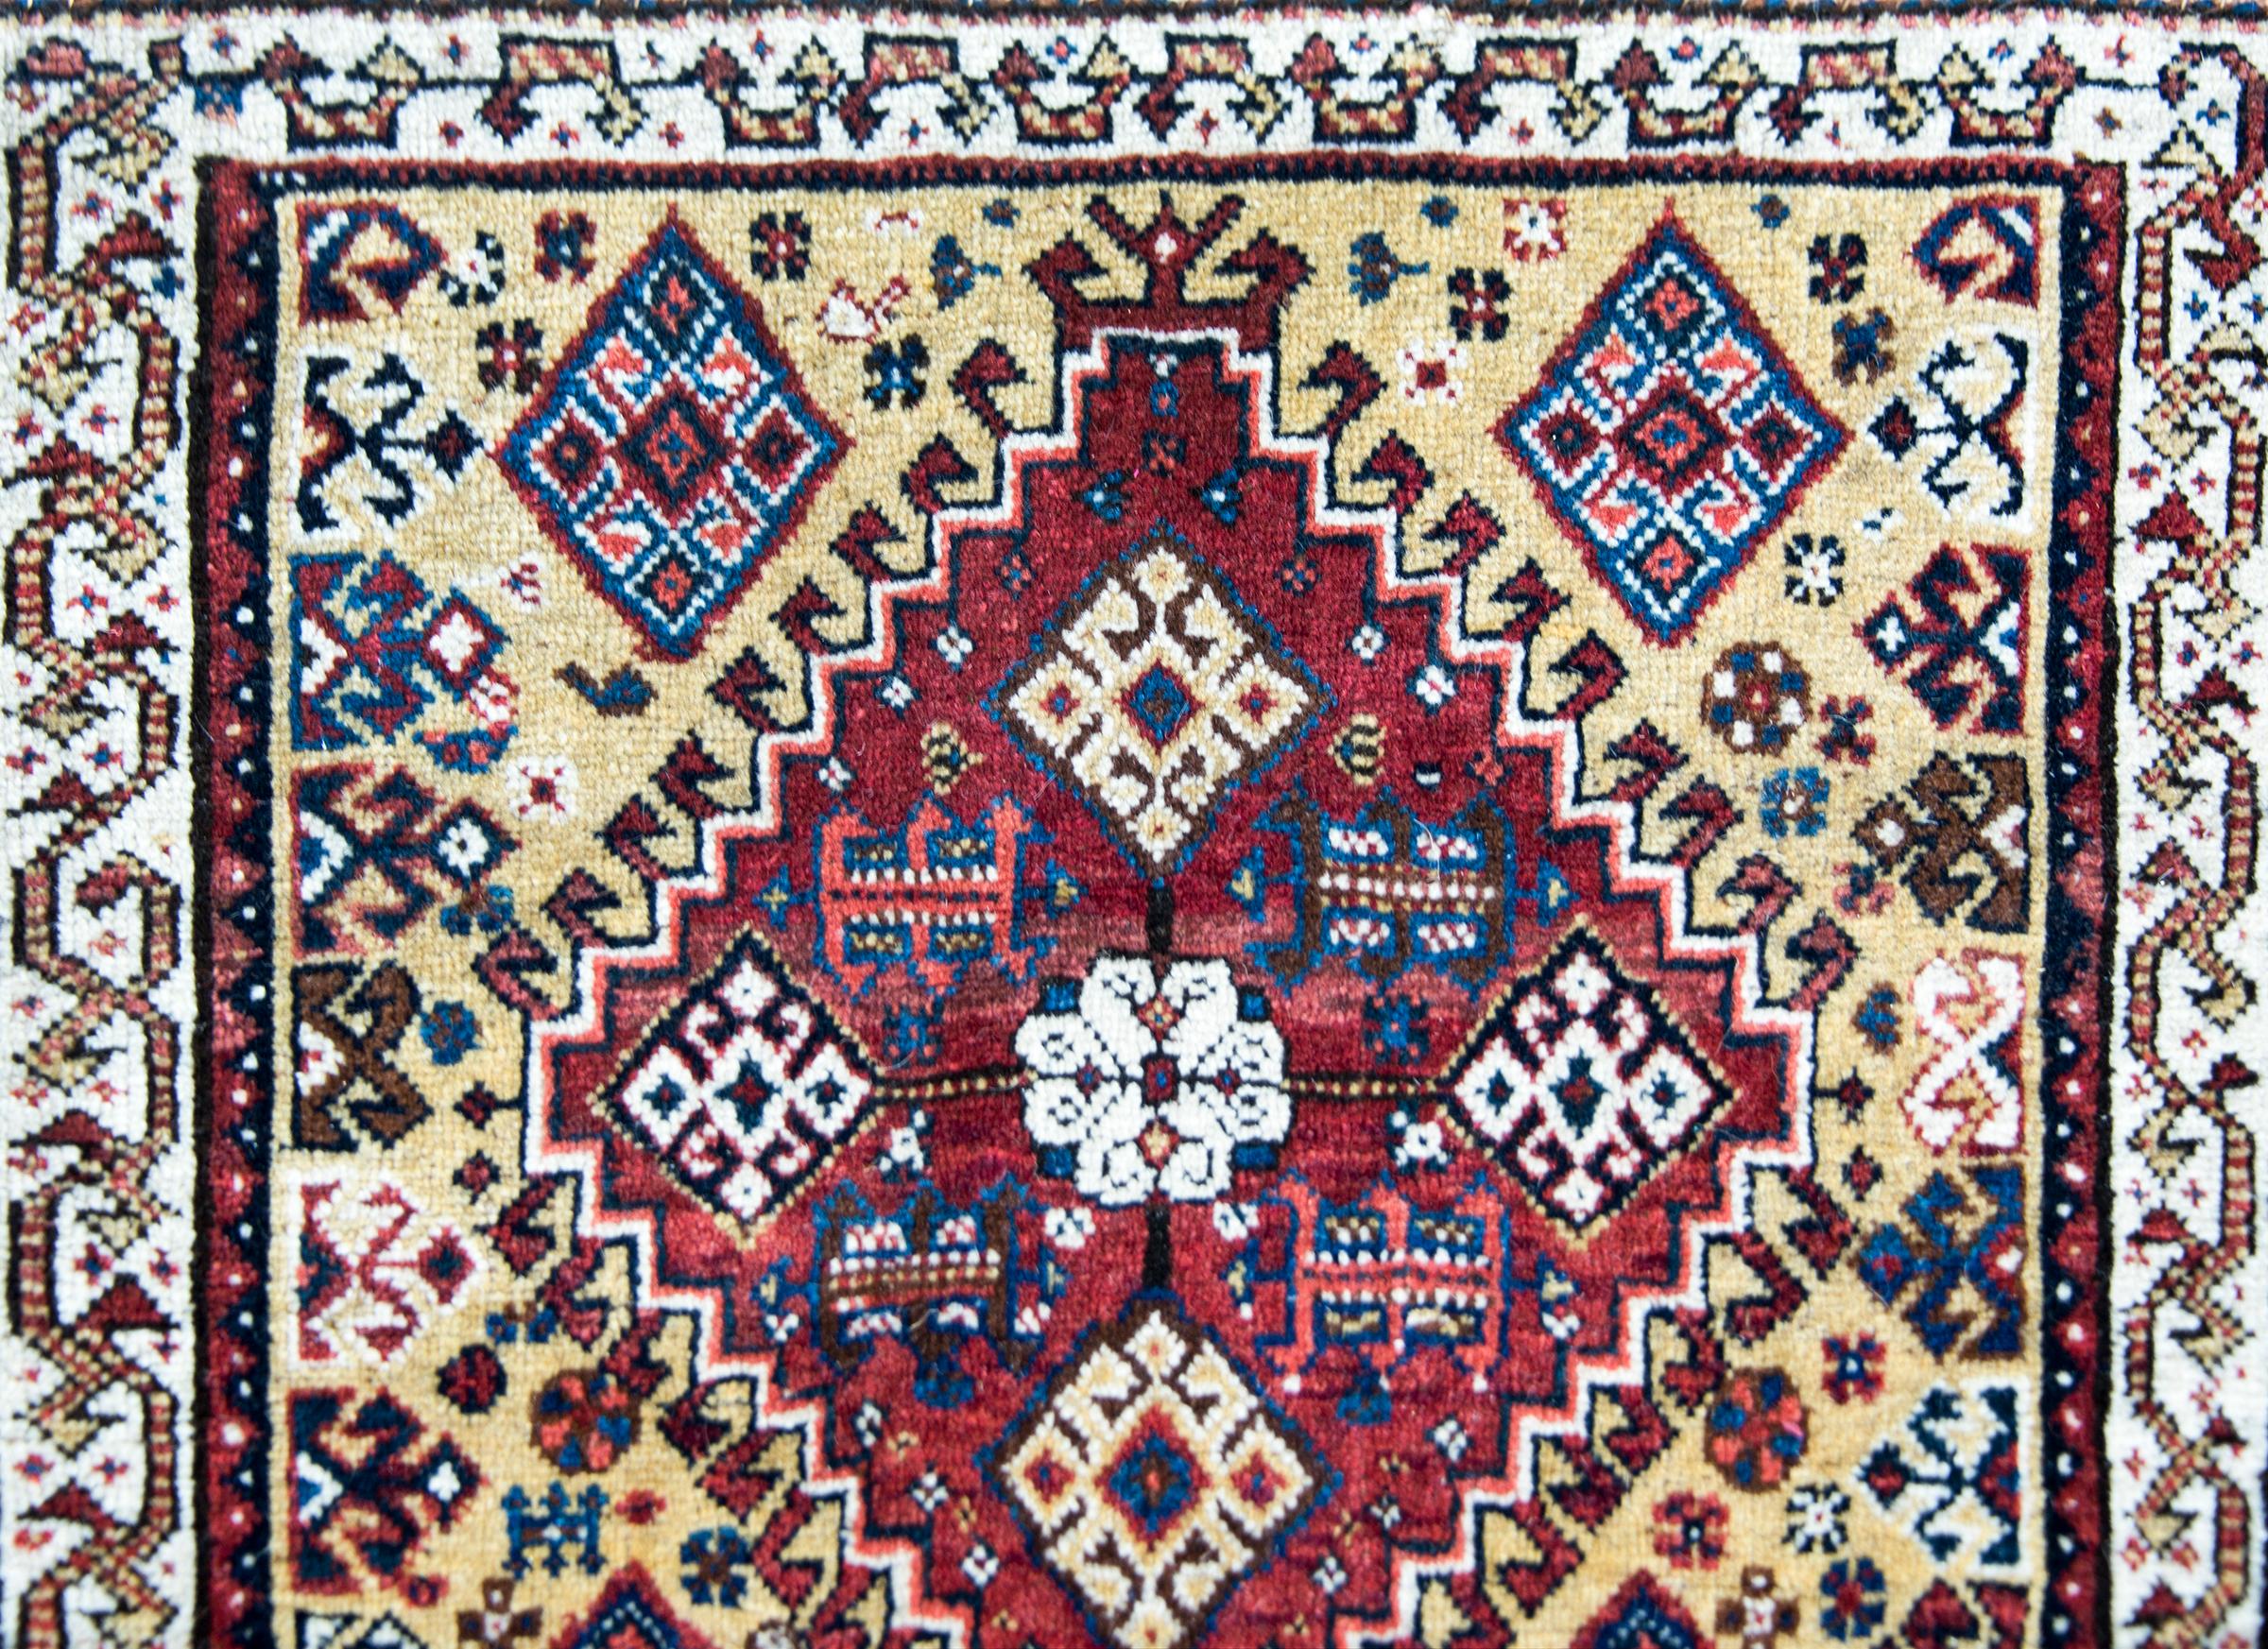 Ein schöner persischer Afschar-Teppich aus dem frühen 20. Jahrhundert mit einem großen zentralen Rautenmuster mit stilisierten Blumen in Karminrot, Weiß, Indigo und Gelb, umgeben von einer Bordüre mit stilisierten Rankenmustern.